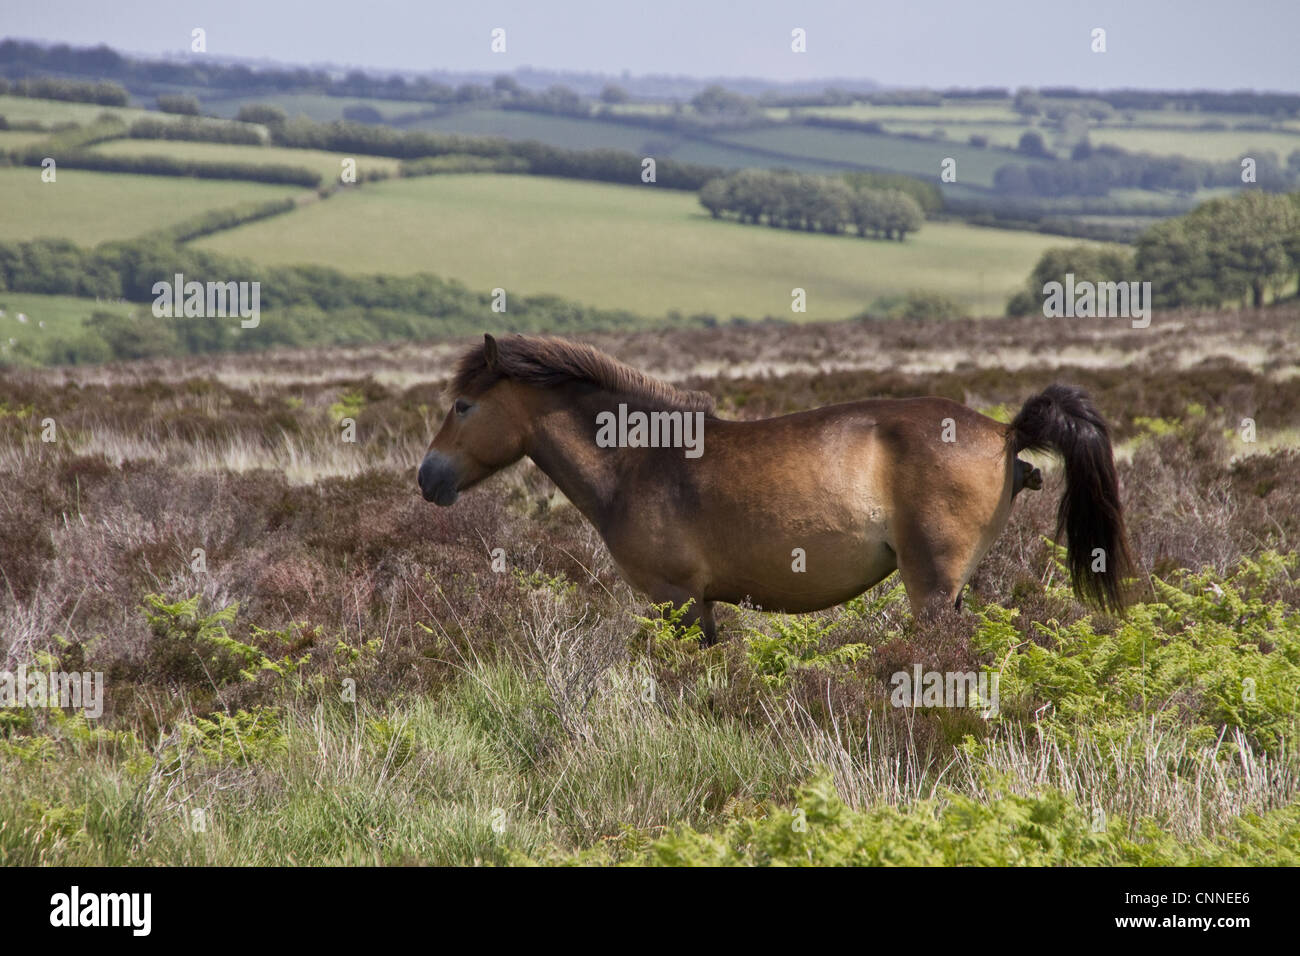 Das Exmoor Pony Pferd züchten native britischen Inseln, wo einige noch als halb verwilderte Nutztiere Exmoor großflächig Moorland Devon durchstreifen Stockfoto